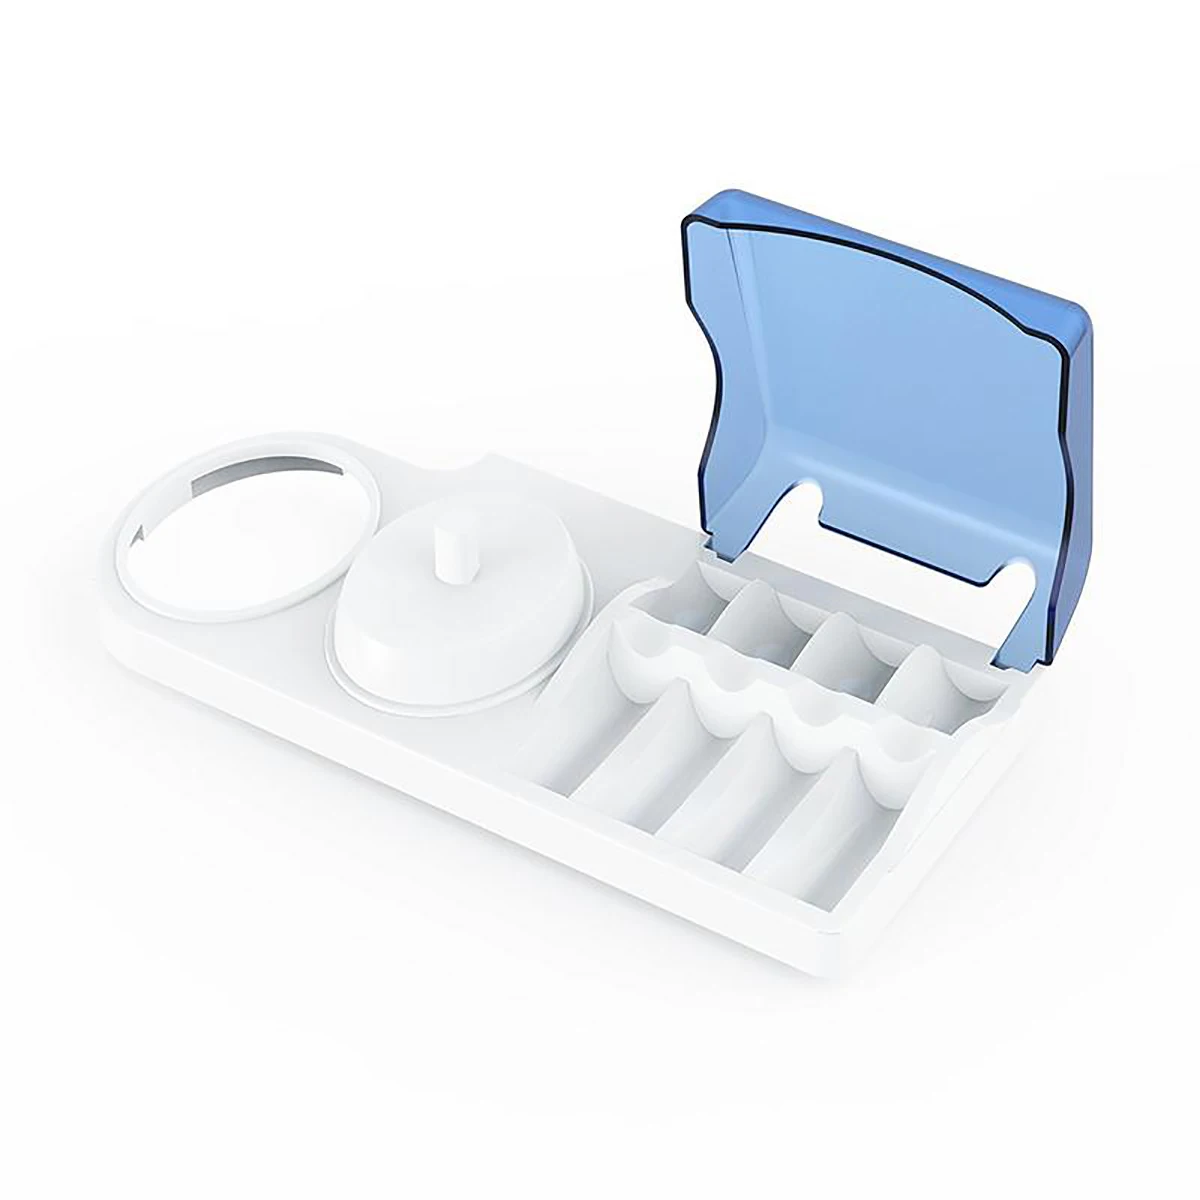 Органайзер для хранения зубной щетки с отверстием для зарядного устройства, держатель для зубной щетки, электрическая головка щетки, подставка для зарядного устройства, органайзер для Blectric Tooth